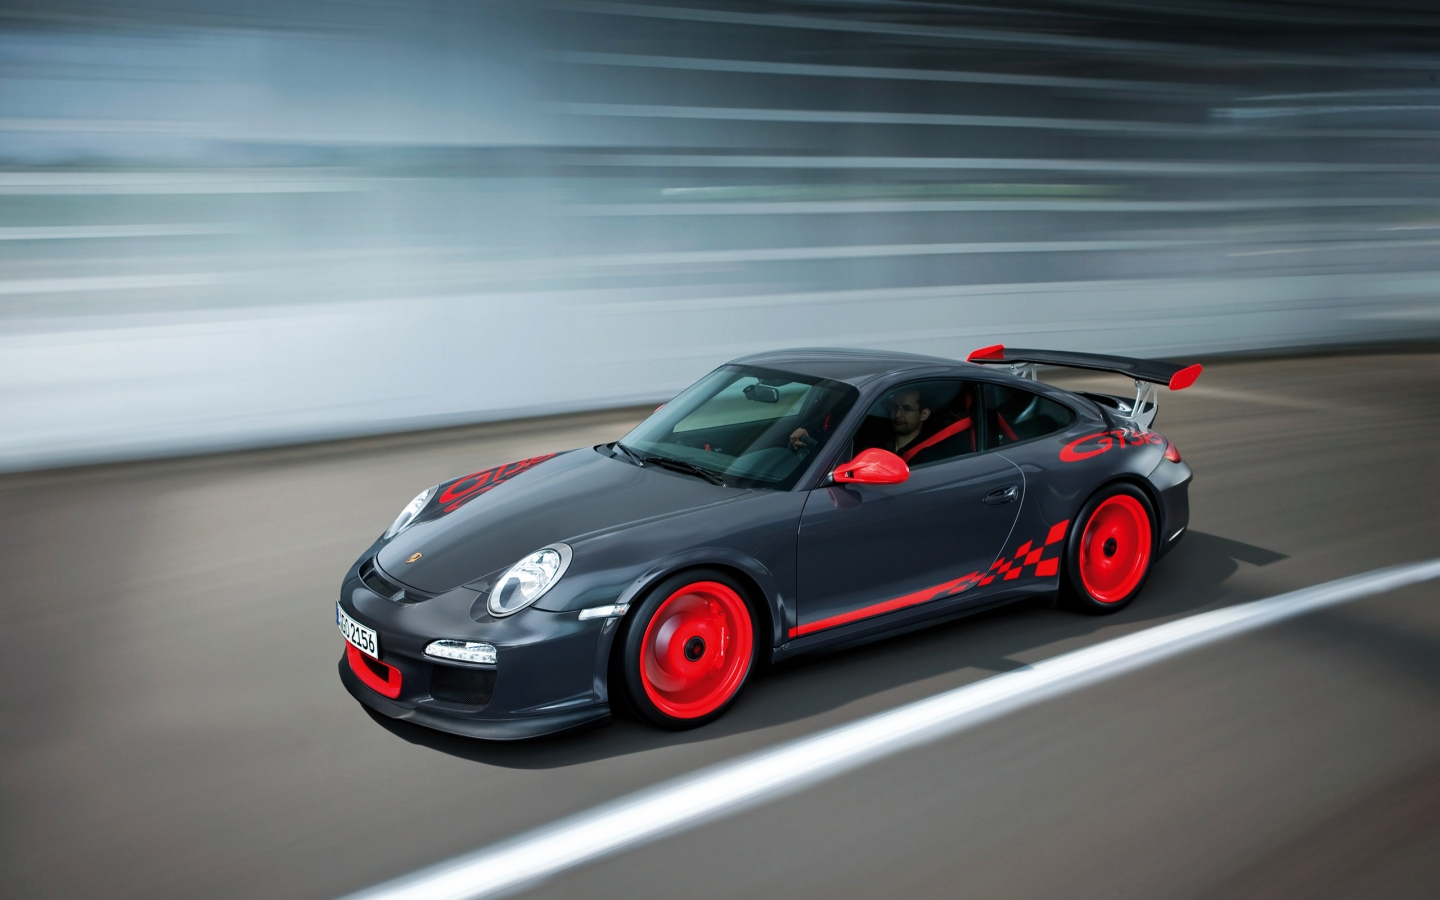 Porsche 911 GT3 RS for 1440 x 900 widescreen resolution